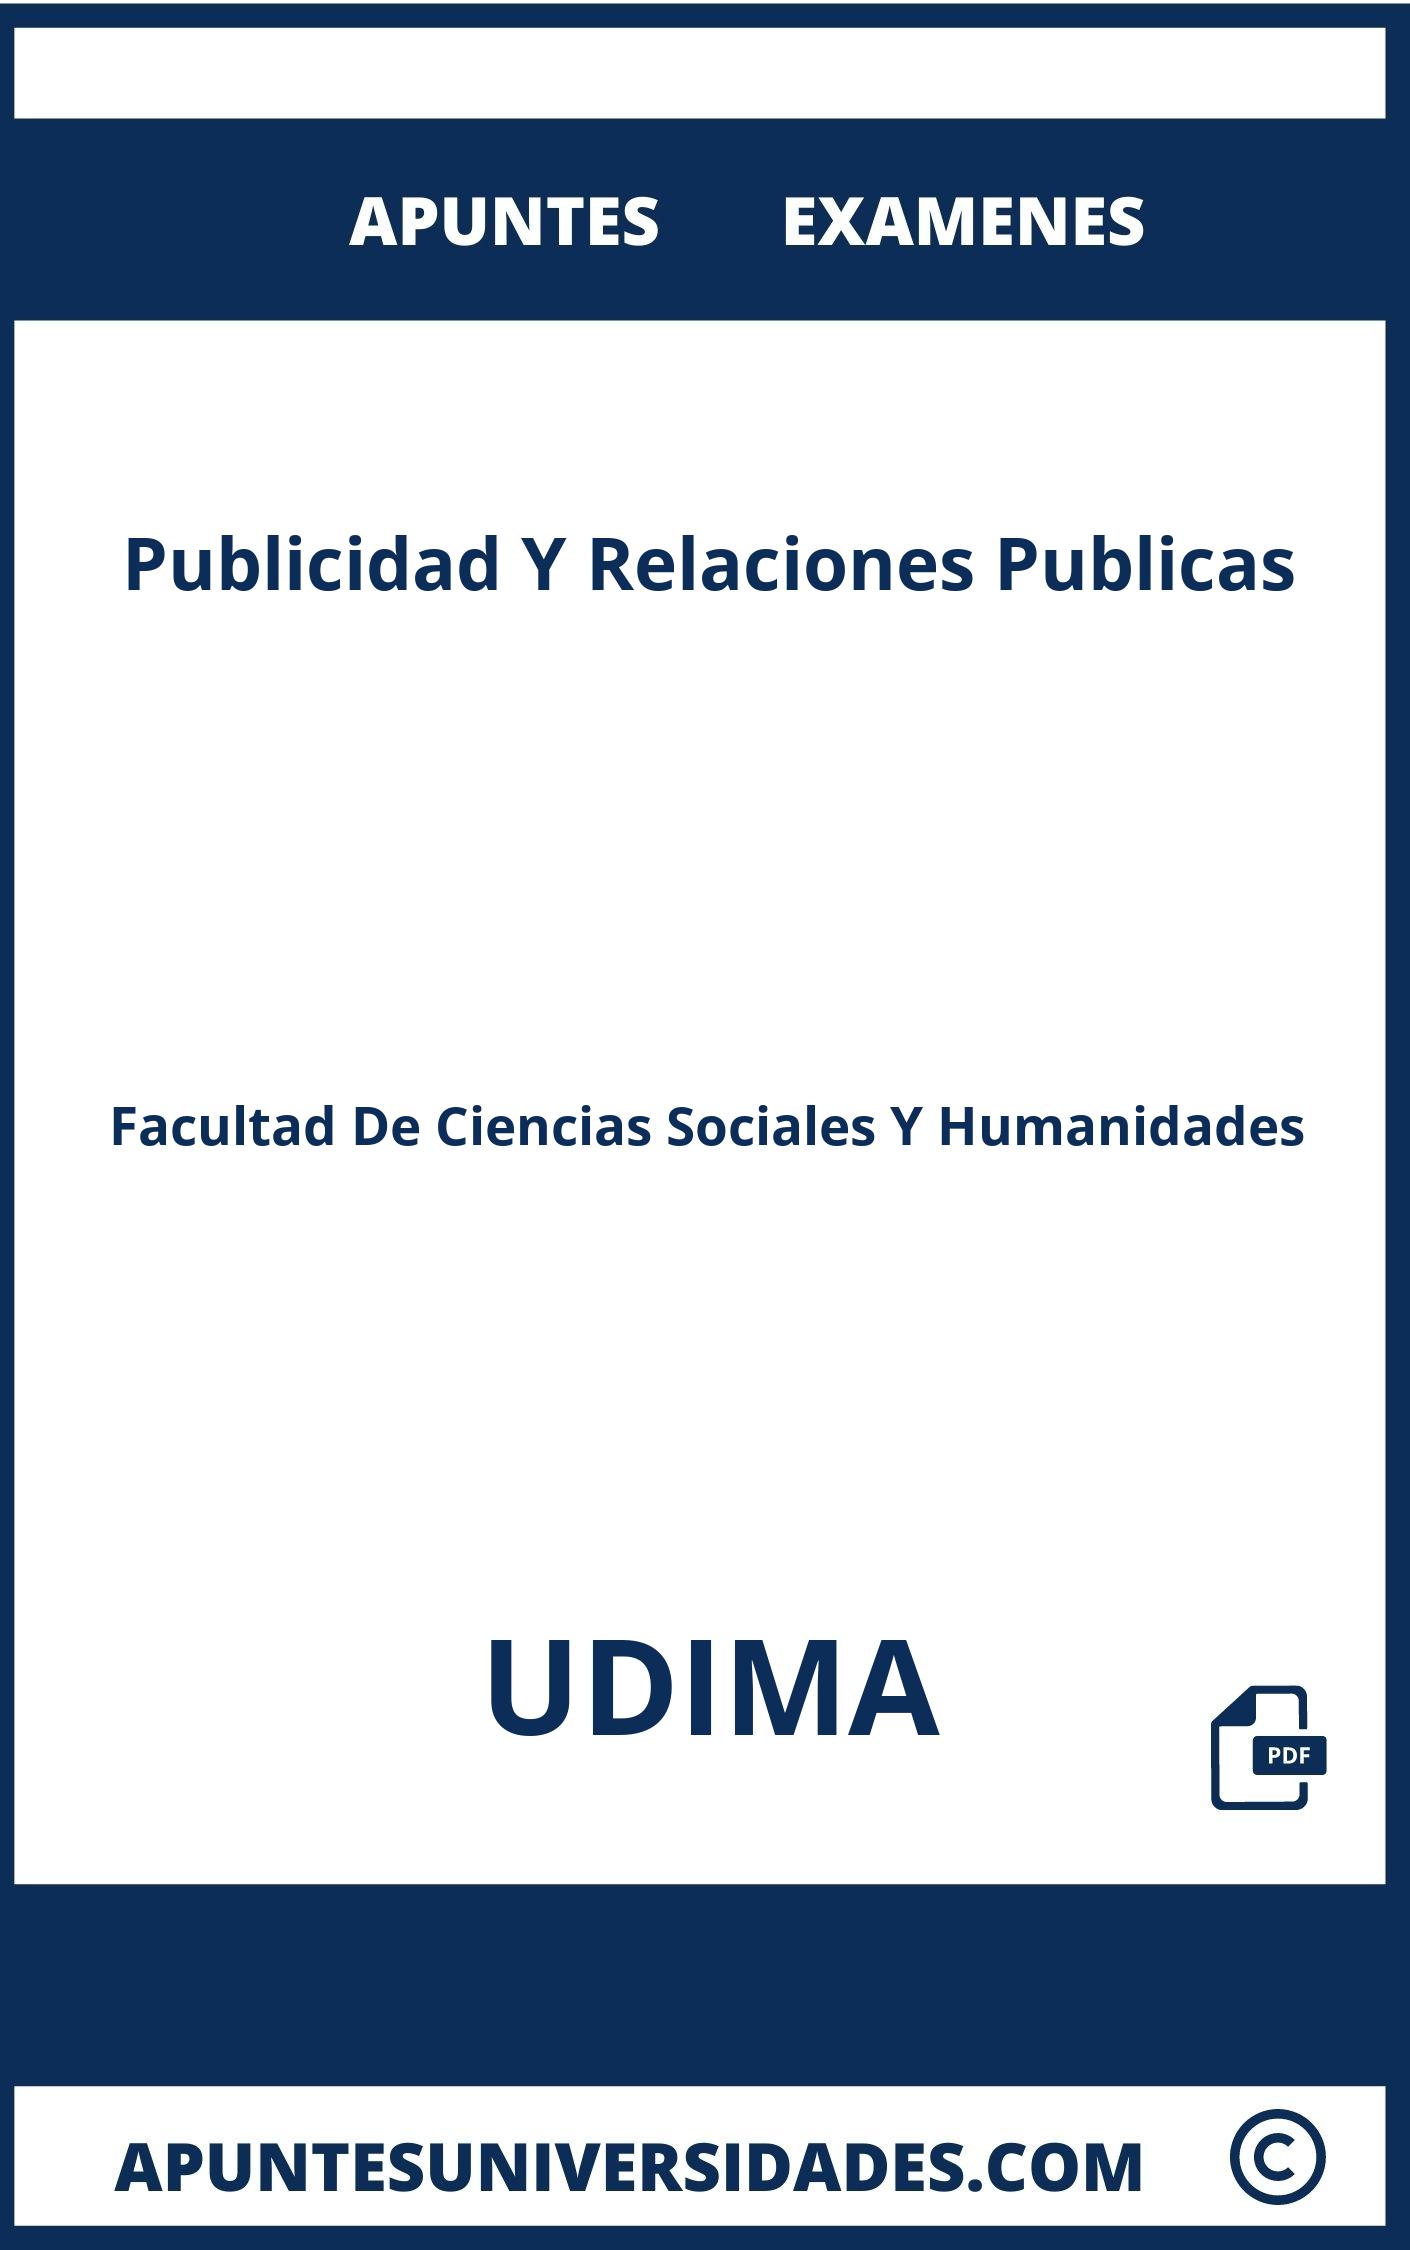 Apuntes y Examenes Publicidad Y Relaciones Publicas UDIMA